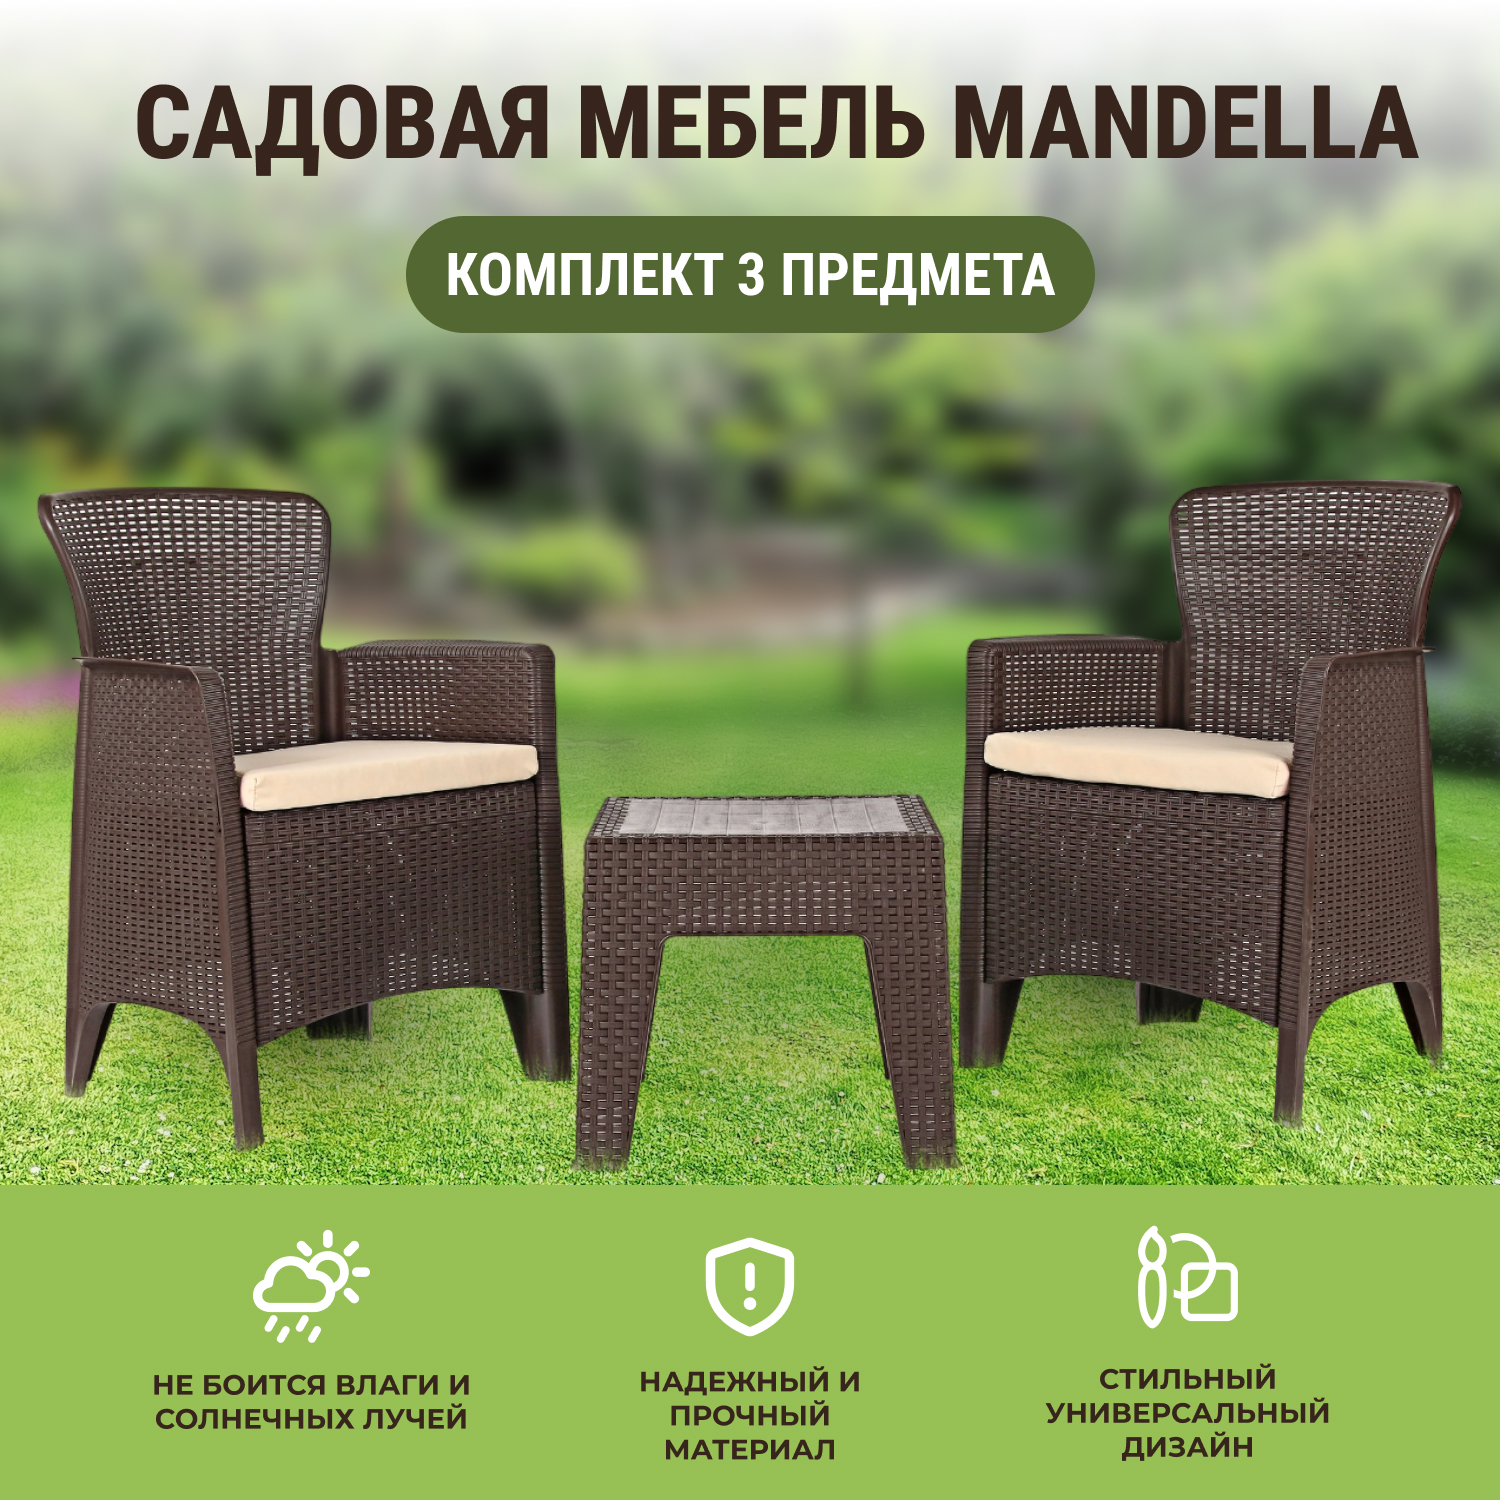 Комплект садовой мебели Mandella Karizma коричневый из 3 предметов - фото 2